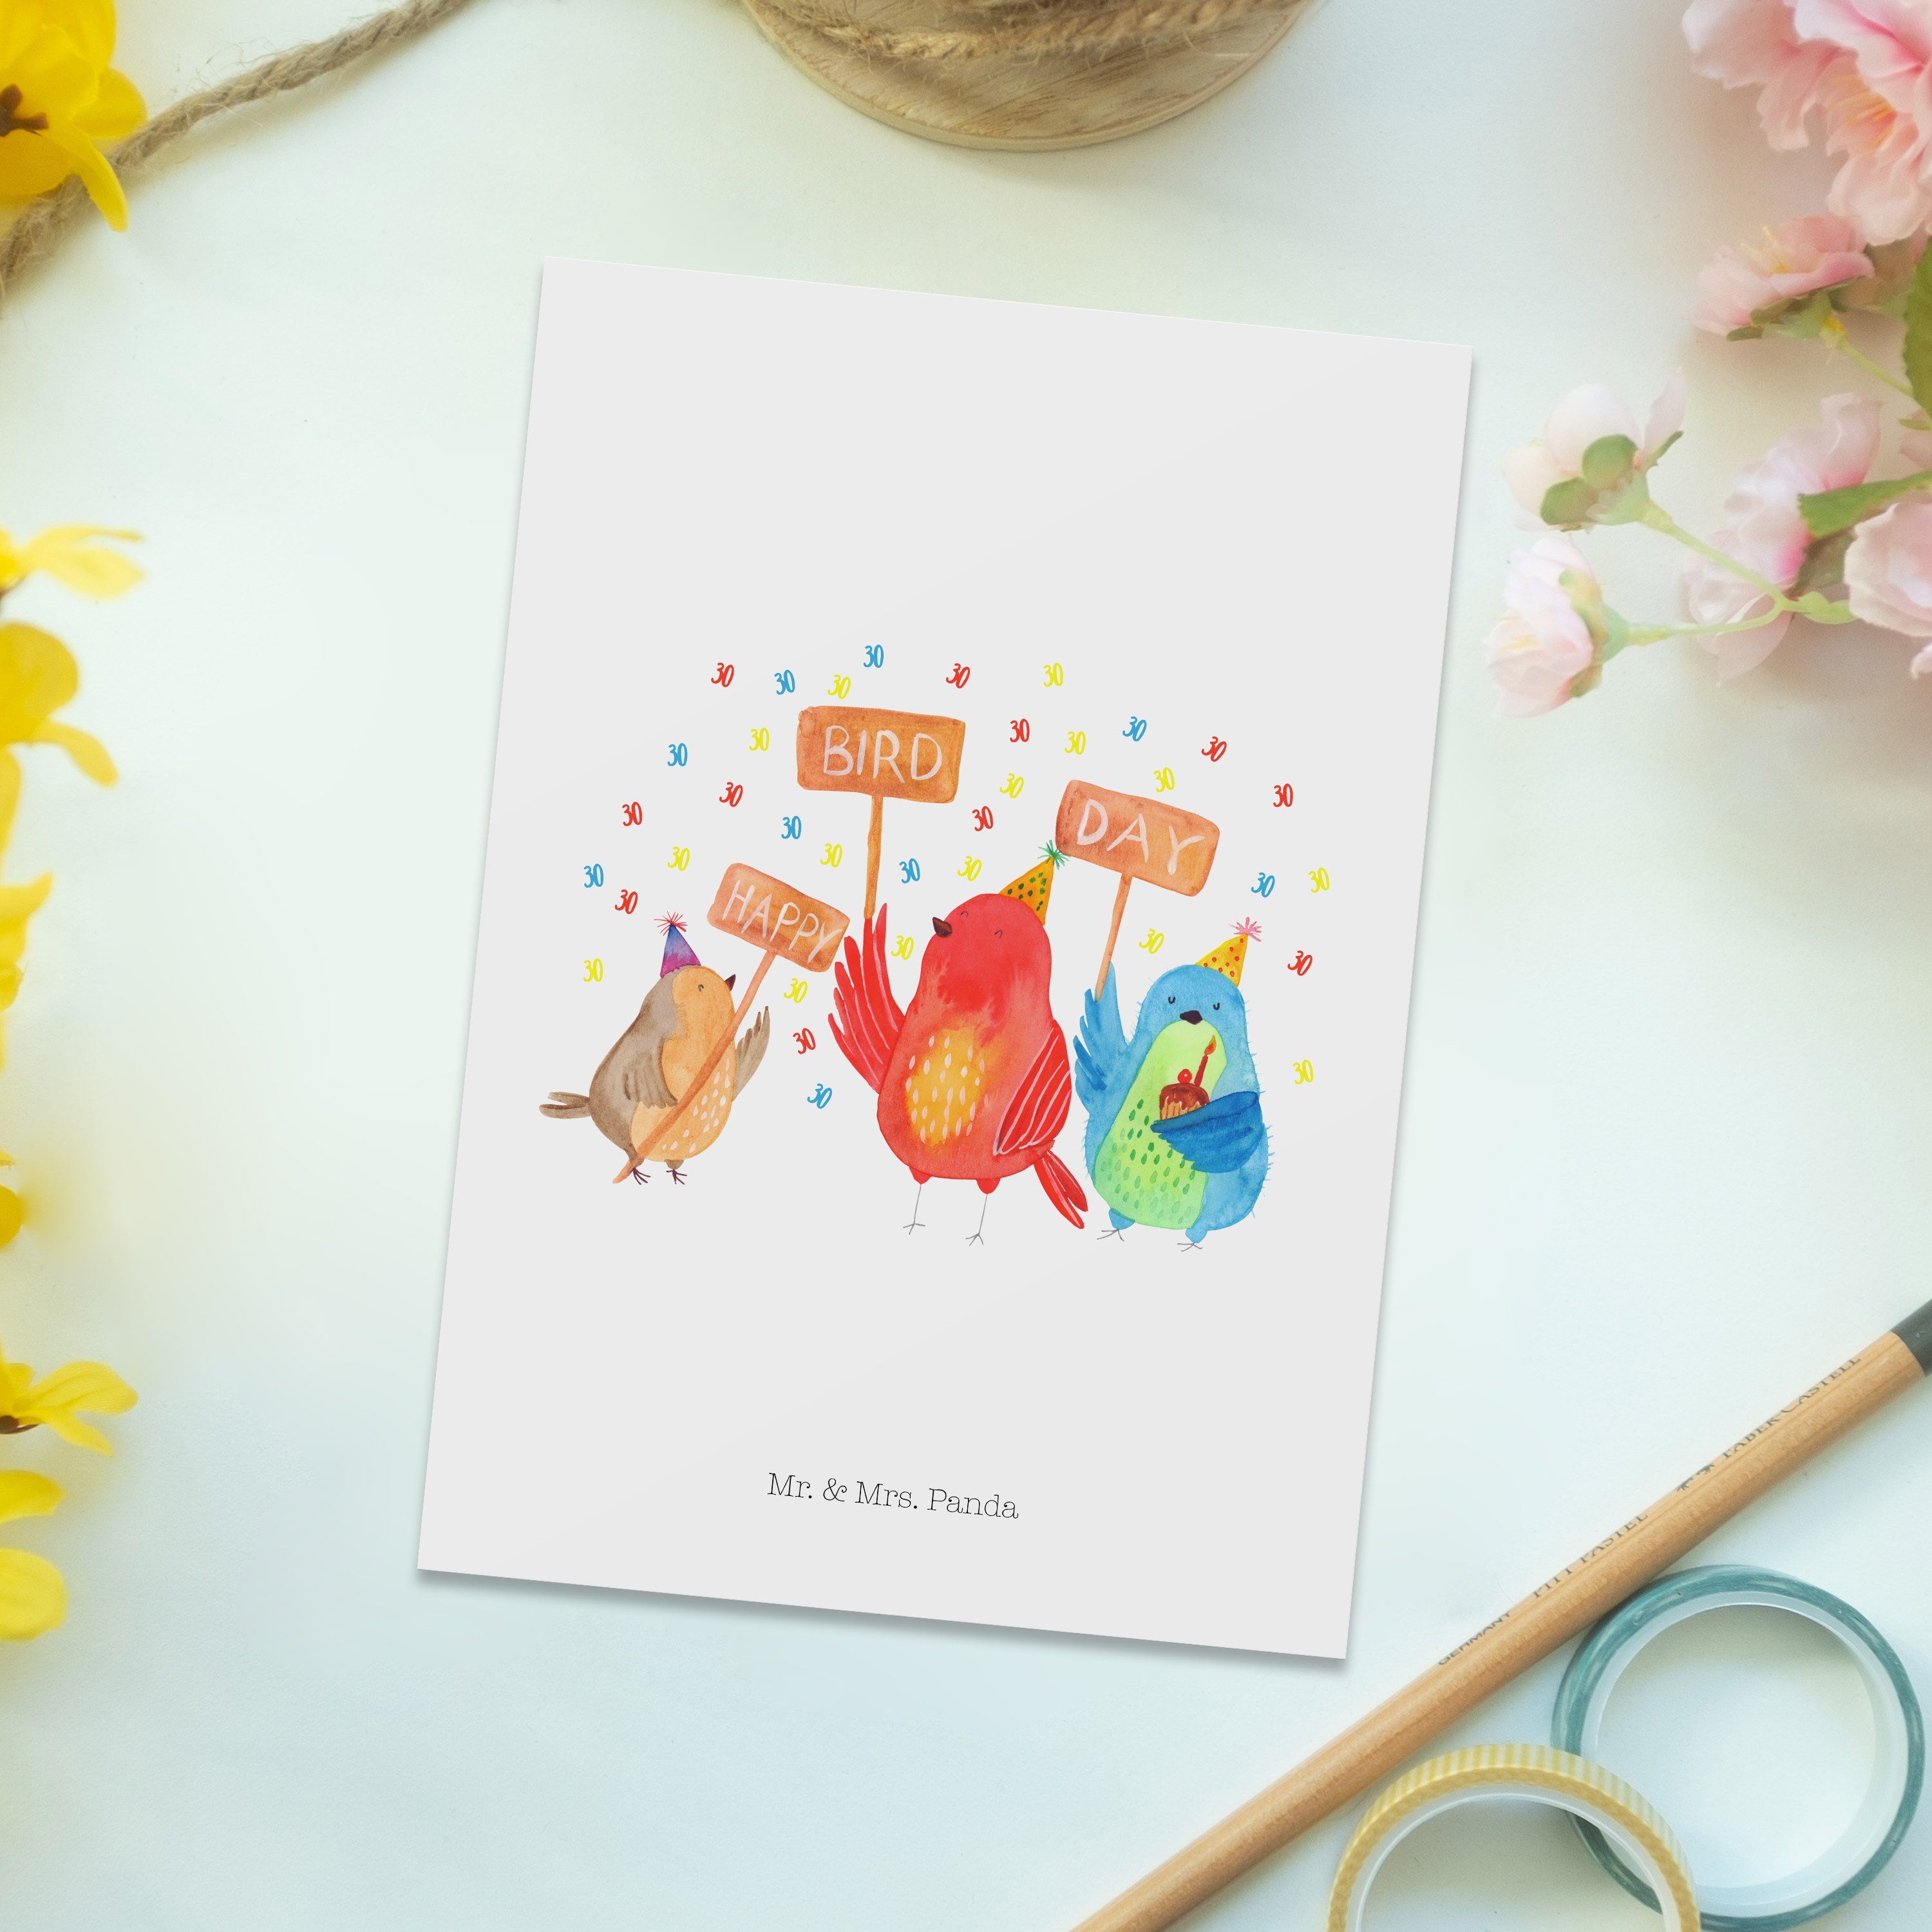 Mr. & Mrs. Panda Postkarte f Weiß Geburtstag Geschenk, - Day 30. Bird Happy - Grußkarte, Feiern